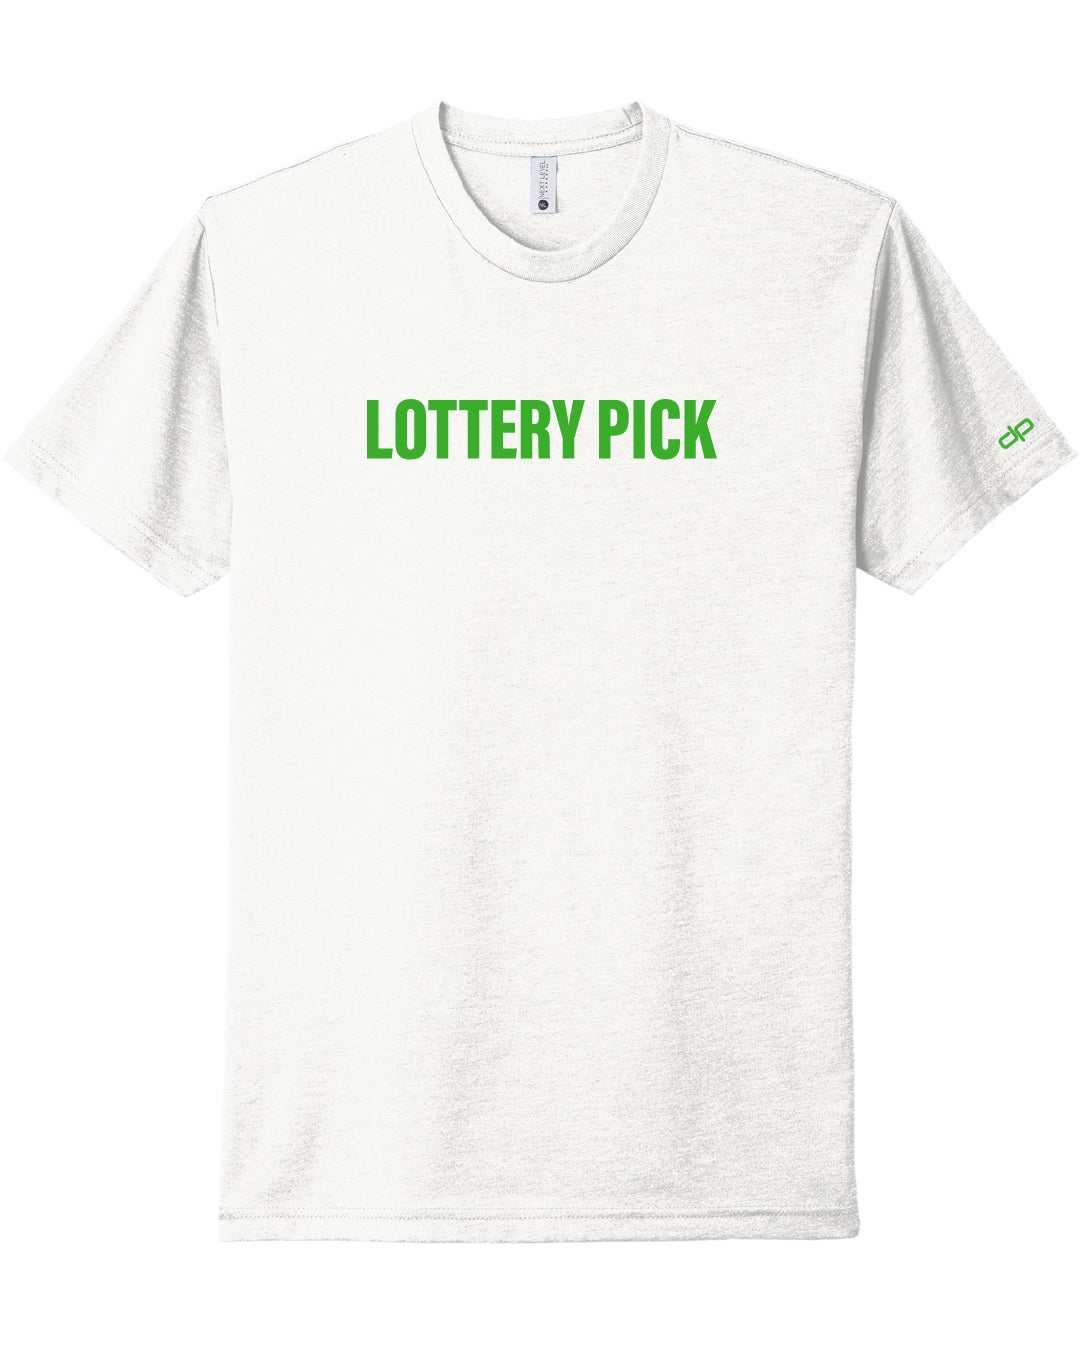 Lottery Pick T-Shirt